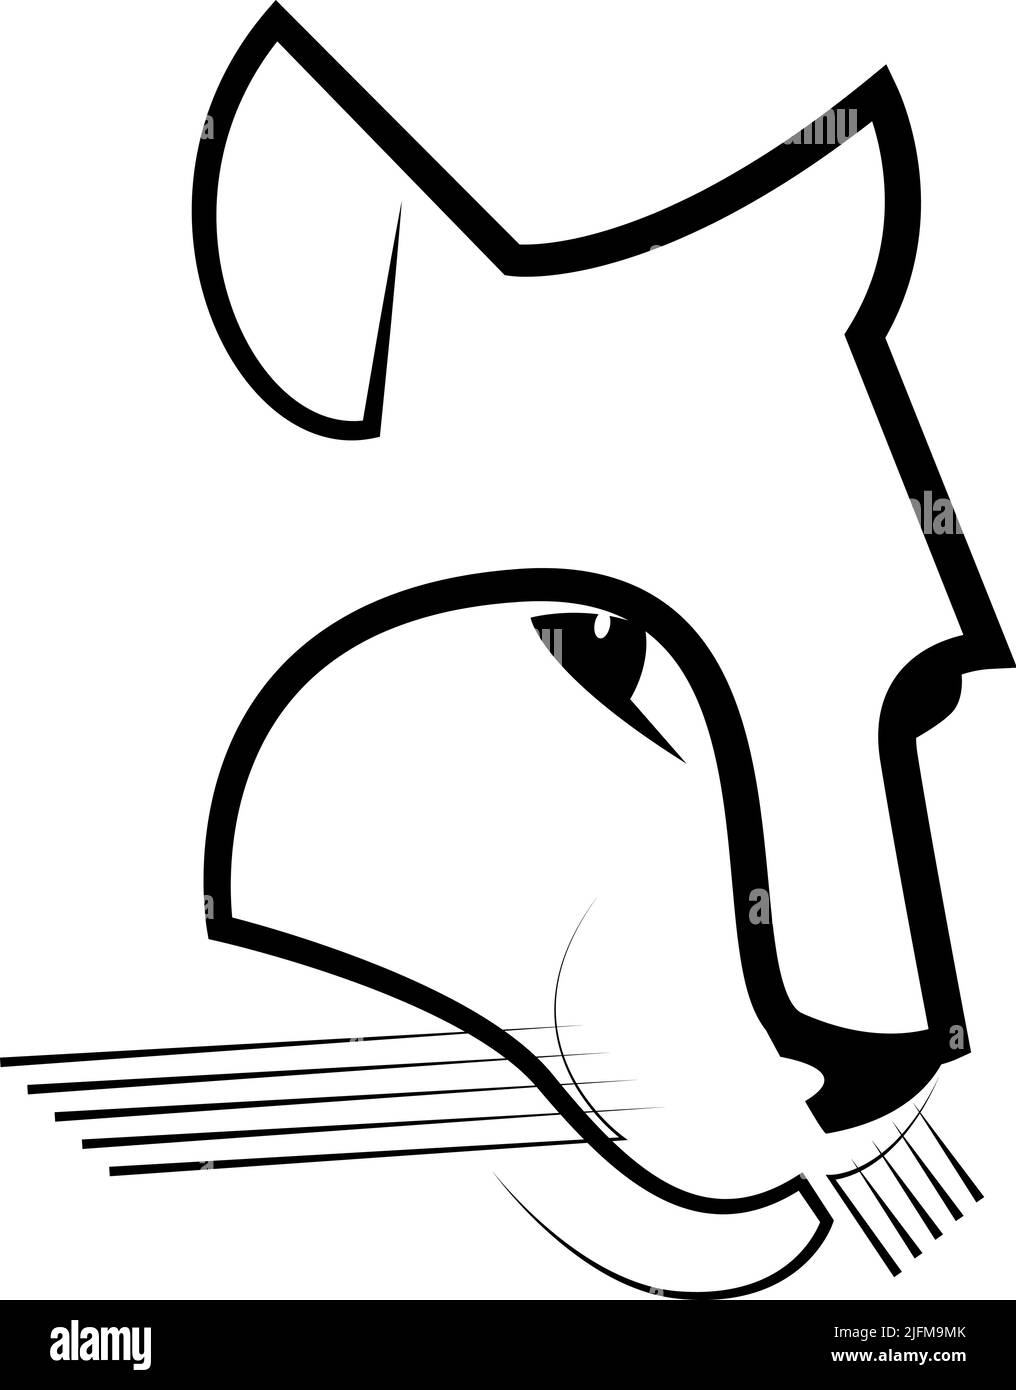 Ligne d'art noire et blanche de la tête de couguar. Jaguar pour l'identité du logo de l'entreprise ou le tatouage Illustration de Vecteur